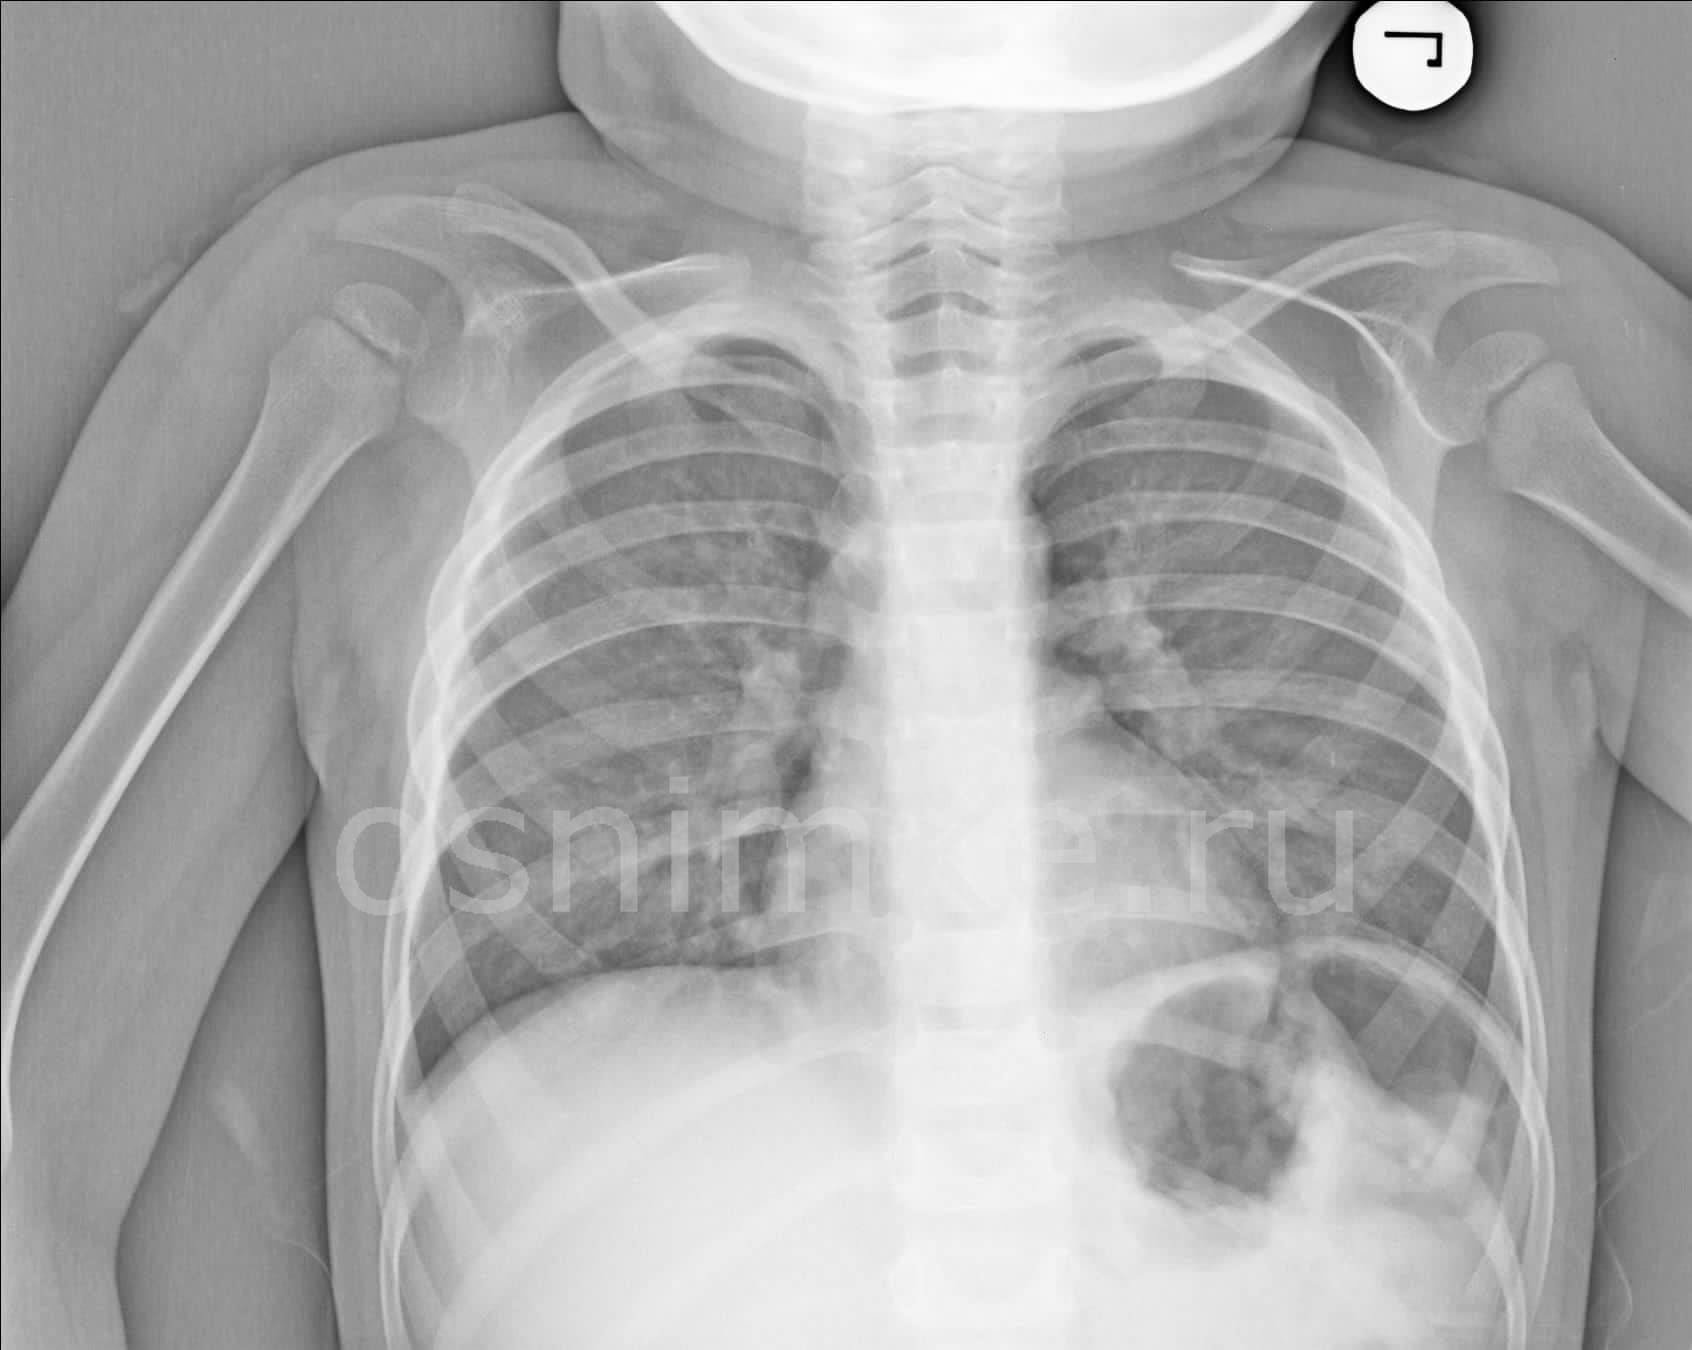 В каких случаях и с какого возраста делают рентген детям? когда назначается обследование, рентген с какого возраста не представляет угрозы для здоровья?